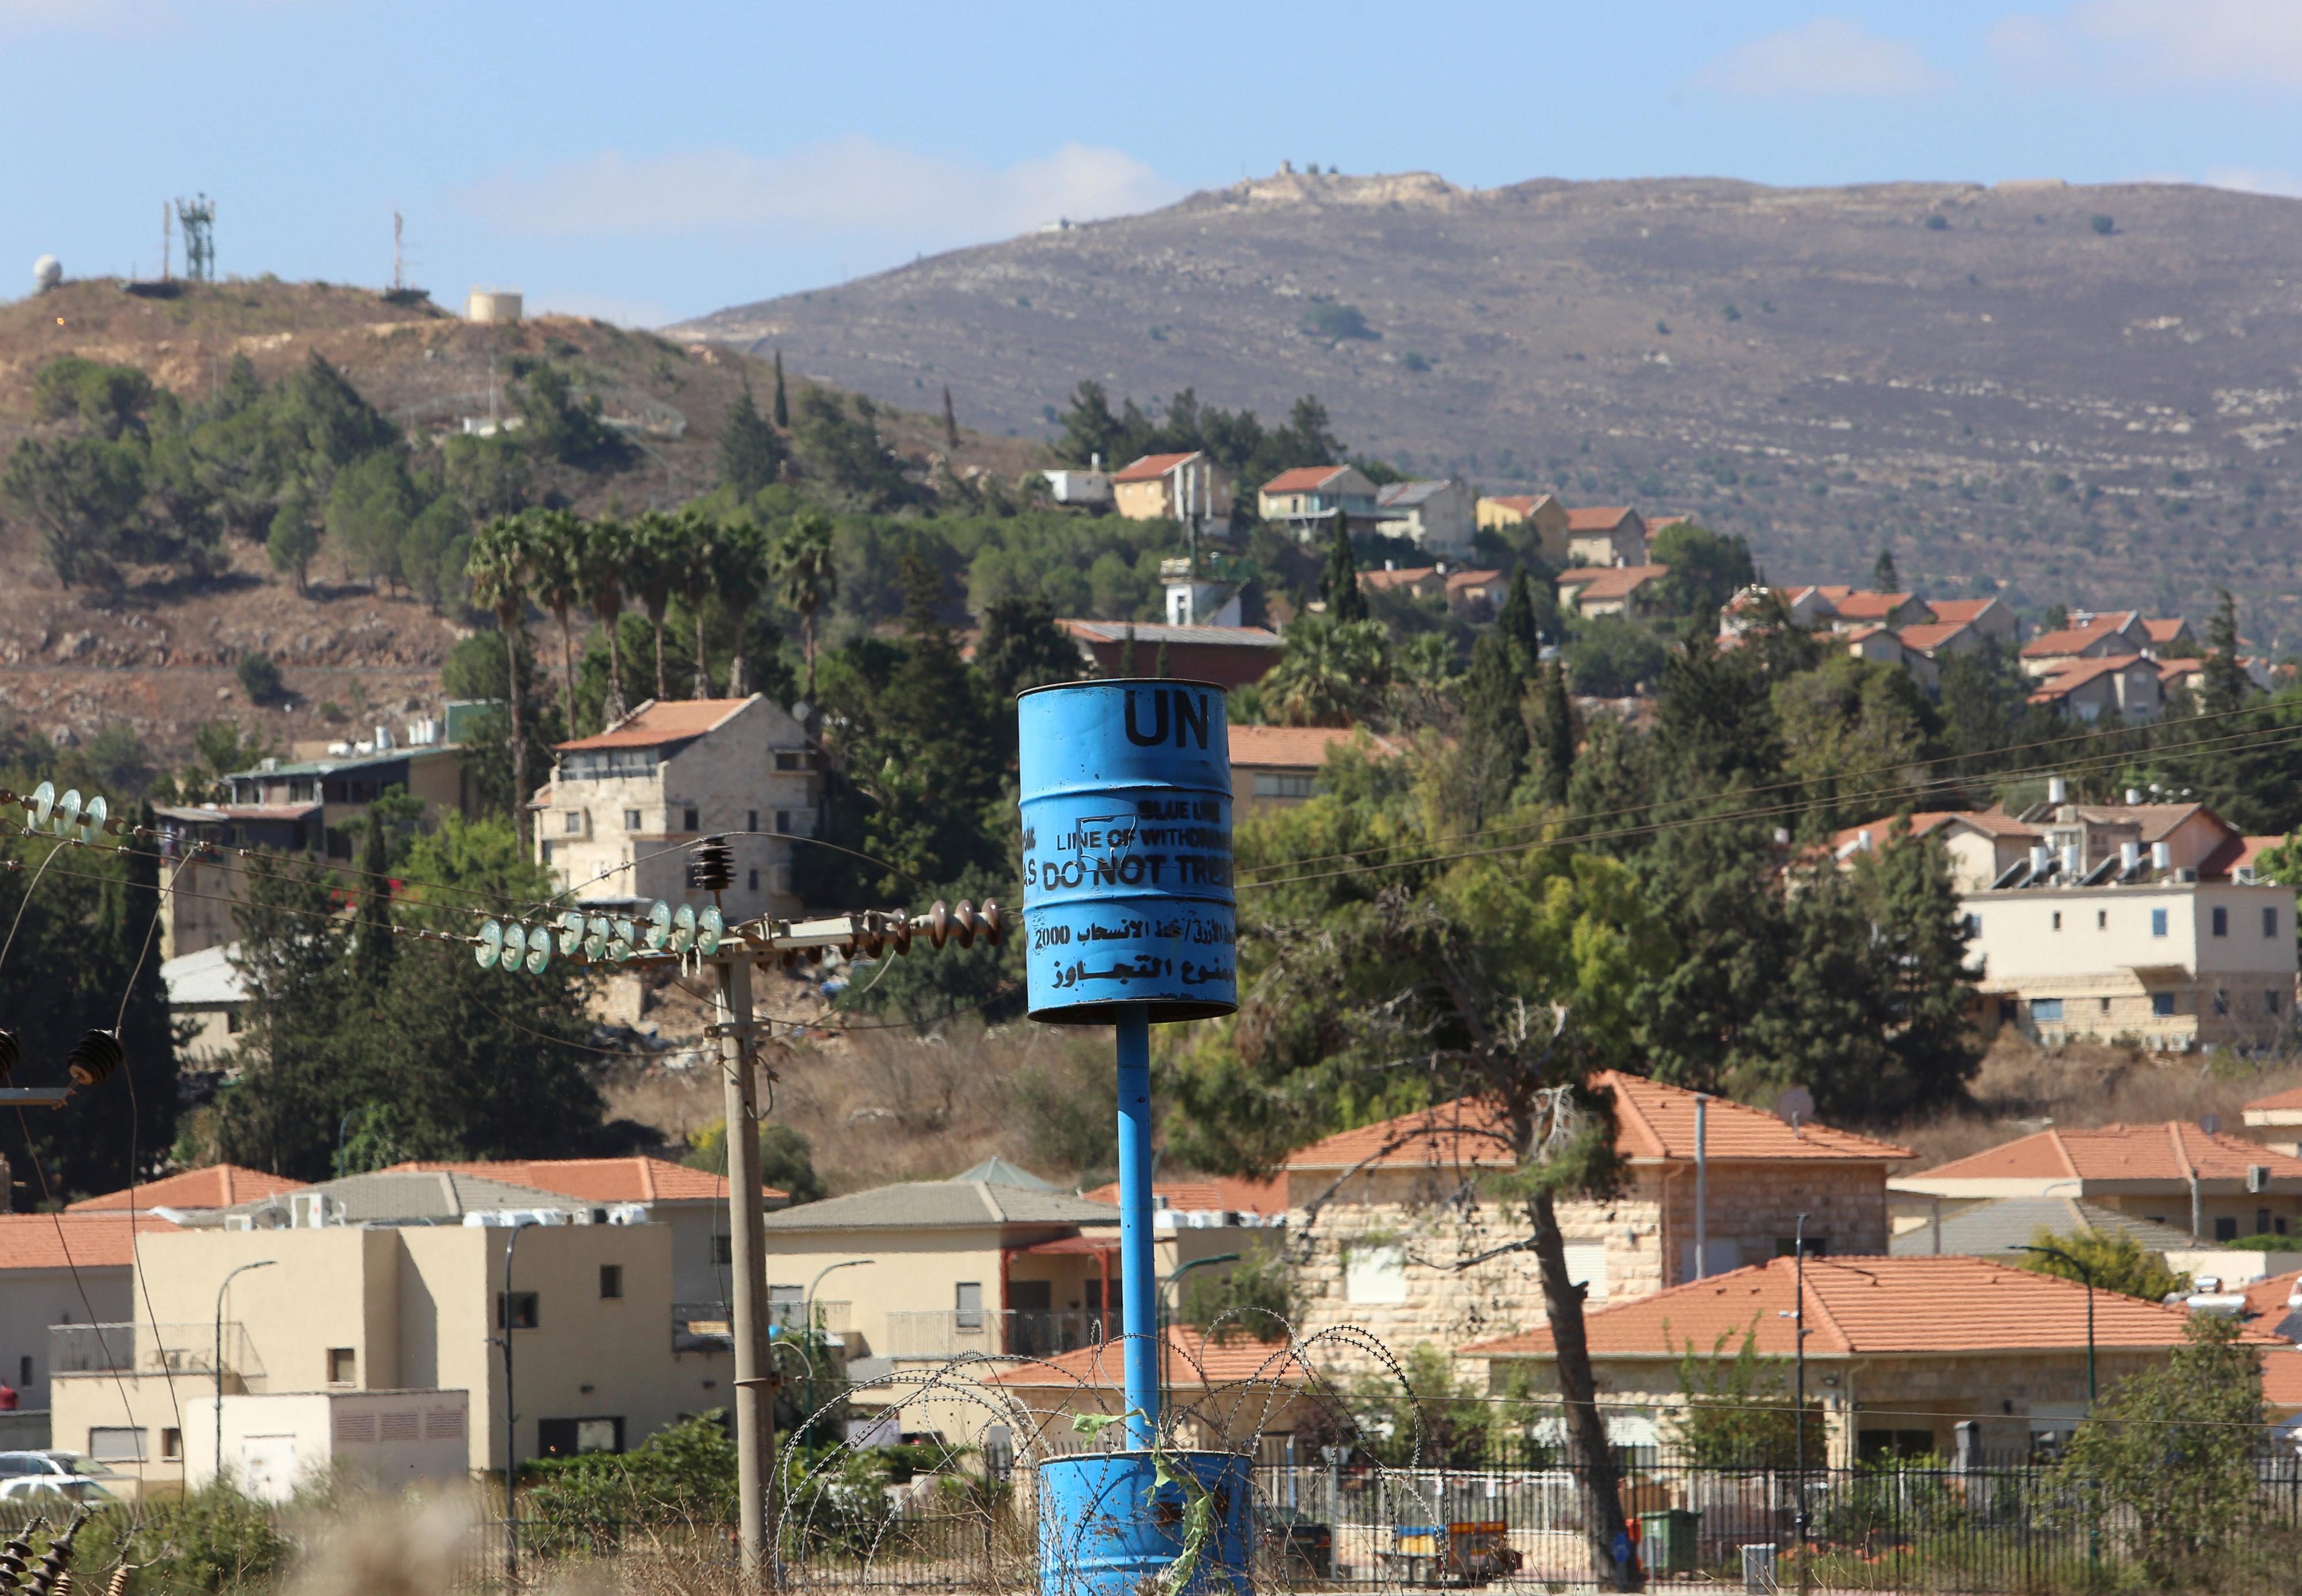 Une notification de la "ligne bleue" de l'ONU est photographiée près de la frontière libano-israélienne, vue depuis le village de Khiam, au sud du Liban, le 2 octobre 2020. [reuters - Aziz Taher]